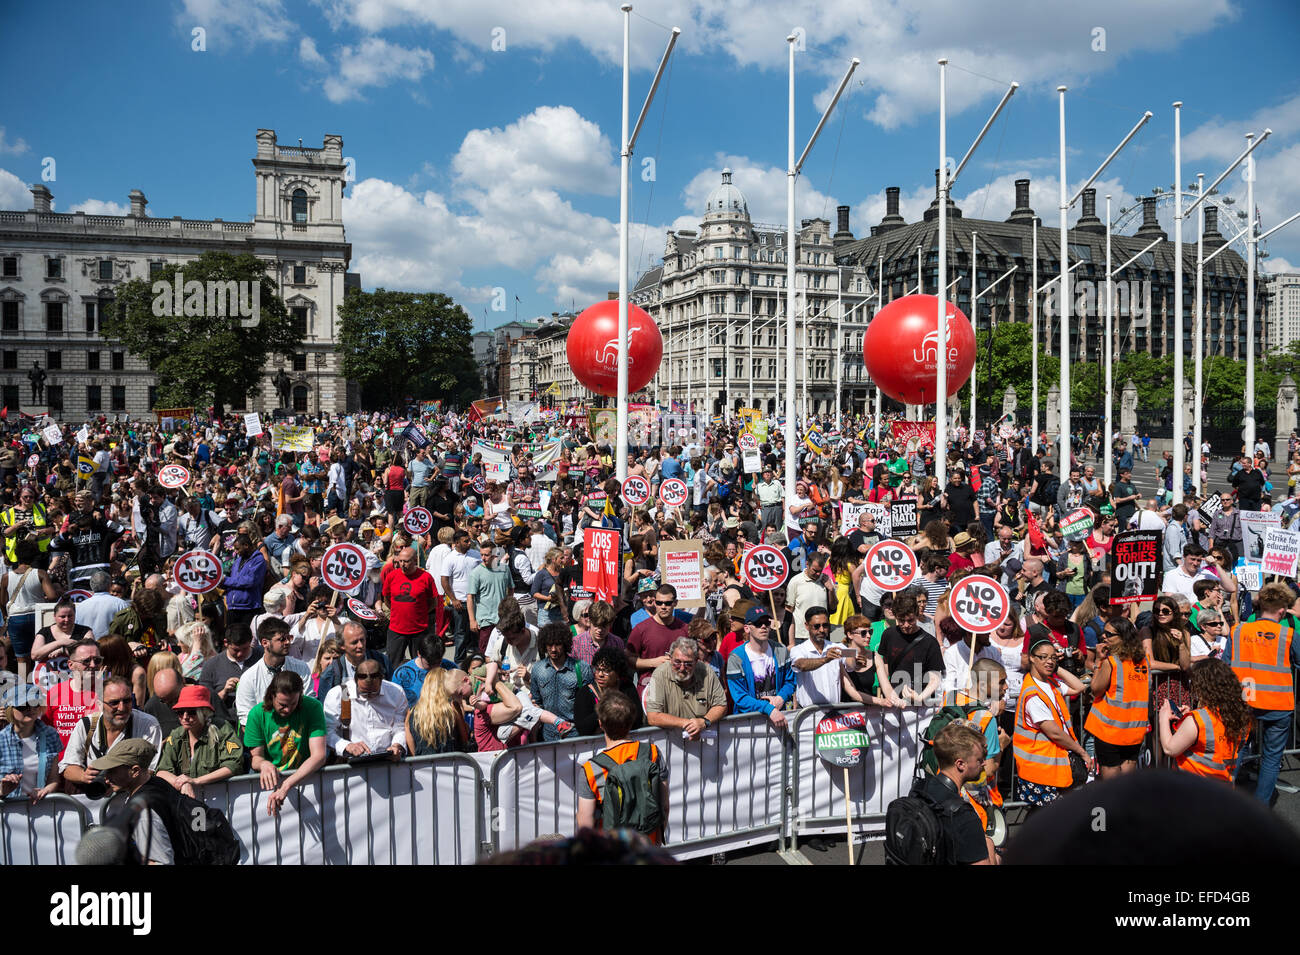 Manifestantes en la Asamblea Popular manifestación contra la austeridad, Londres, 21 de junio de 2014 Foto de stock